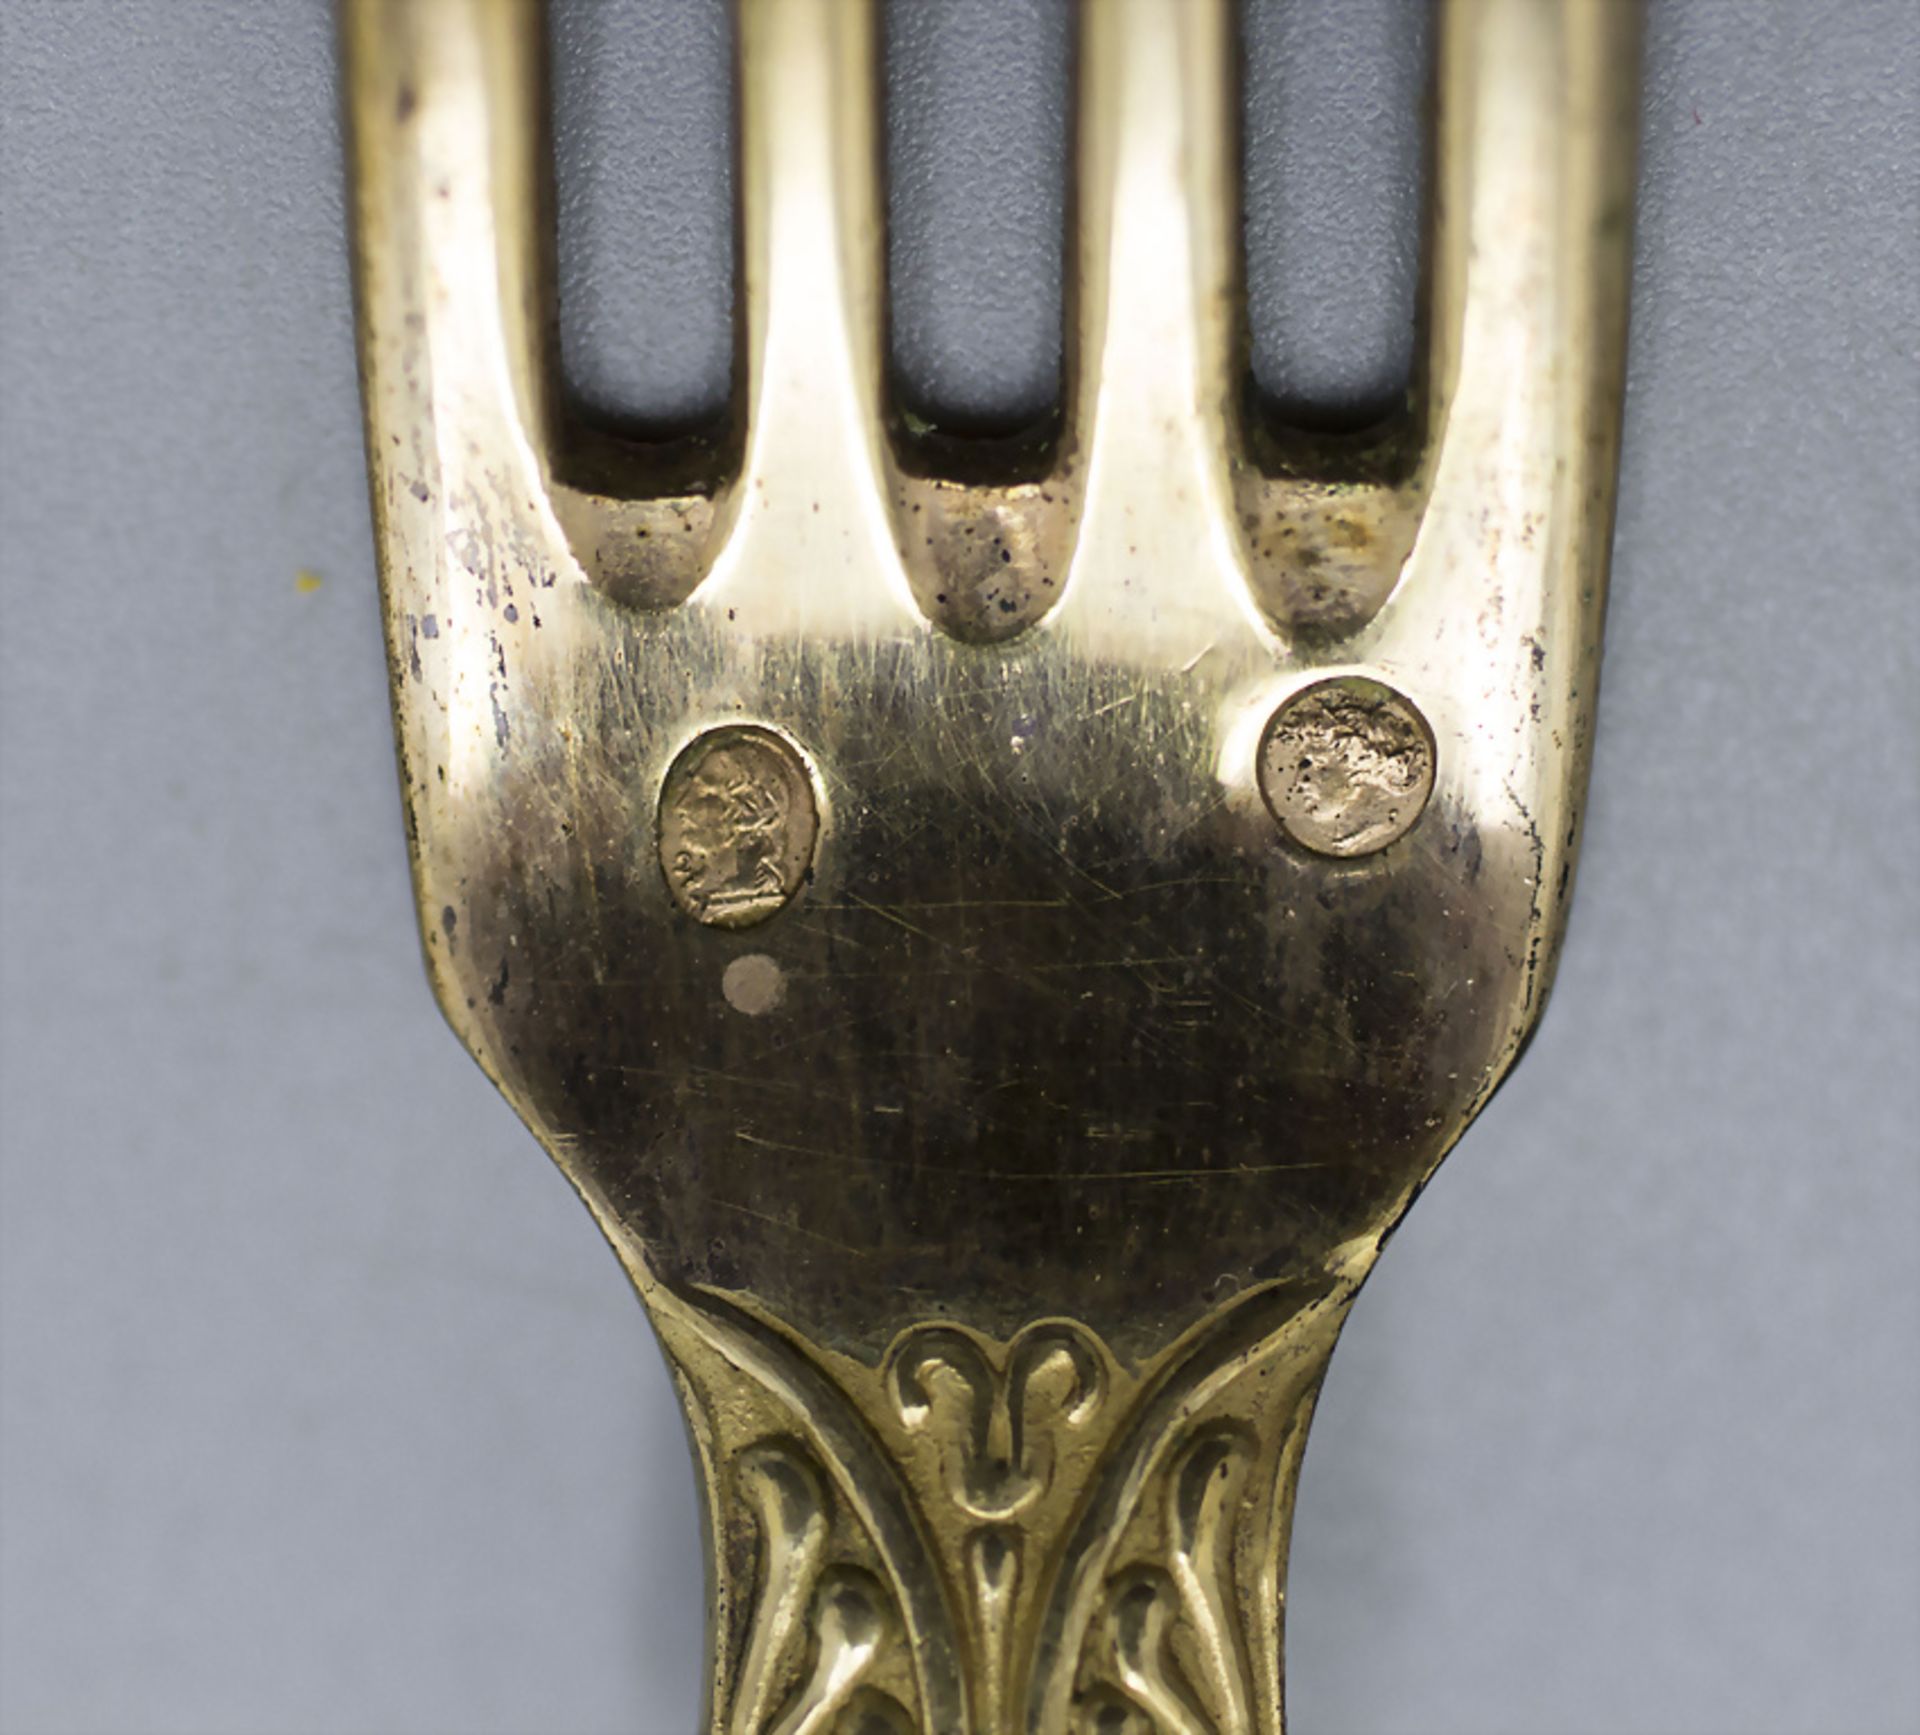 4tlg. Vermeille Besteck im Etui / A 4-piece set of guilded silver cutlery in a box, ... - Bild 5 aus 6